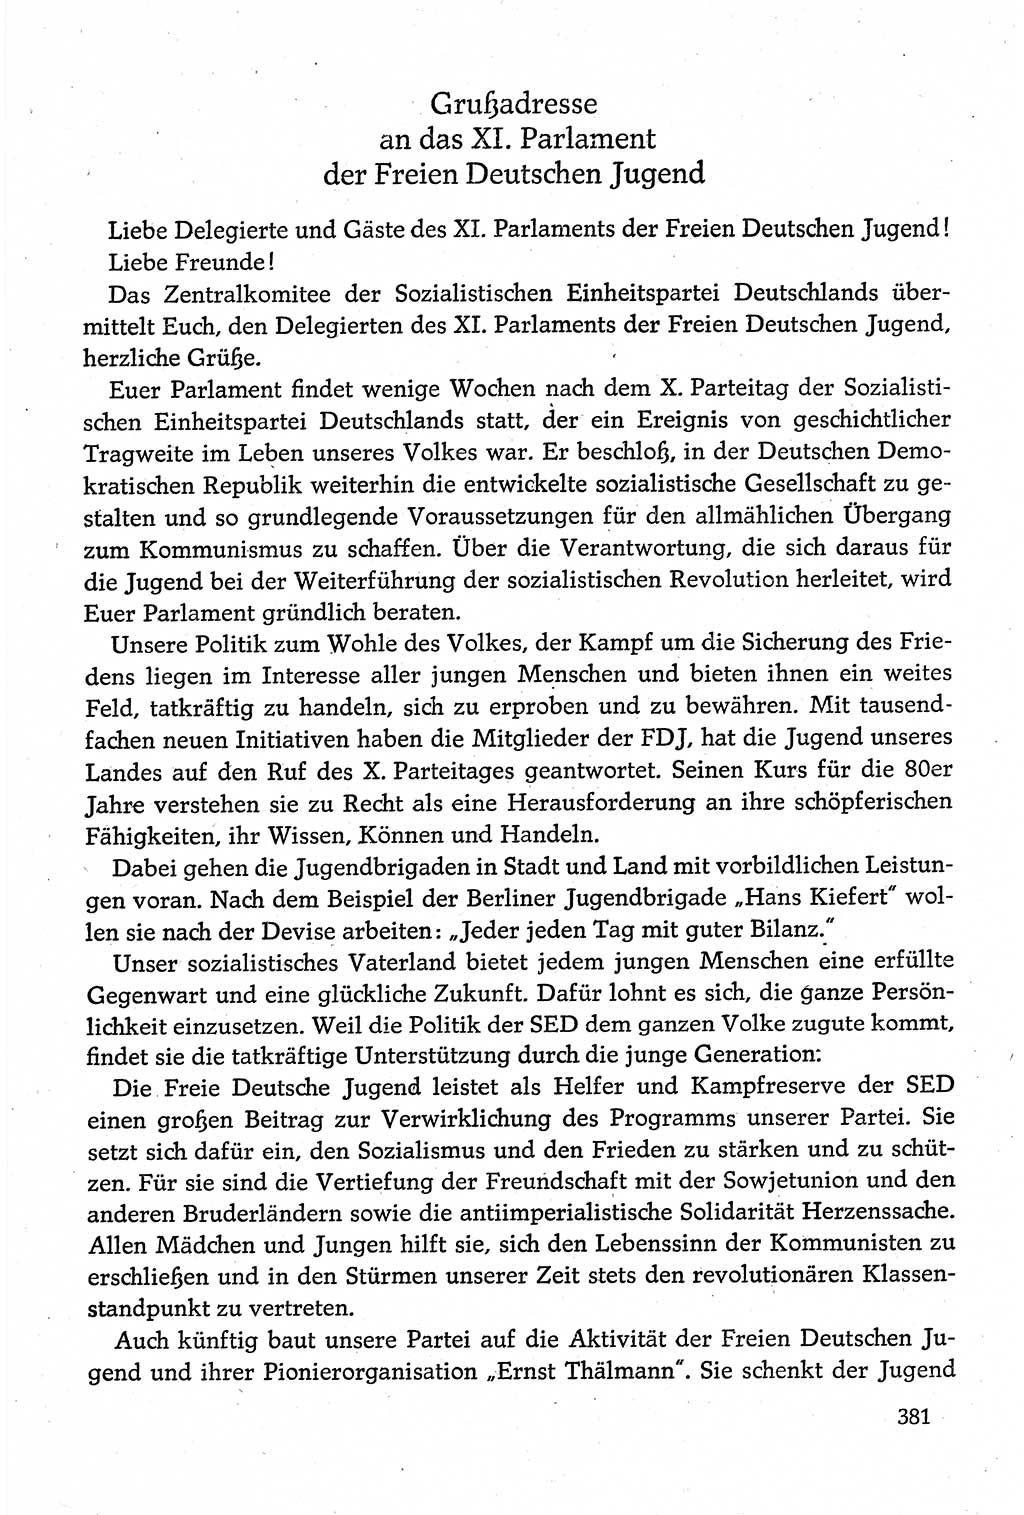 Dokumente der Sozialistischen Einheitspartei Deutschlands (SED) [Deutsche Demokratische Republik (DDR)] 1980-1981, Seite 381 (Dok. SED DDR 1980-1981, S. 381)